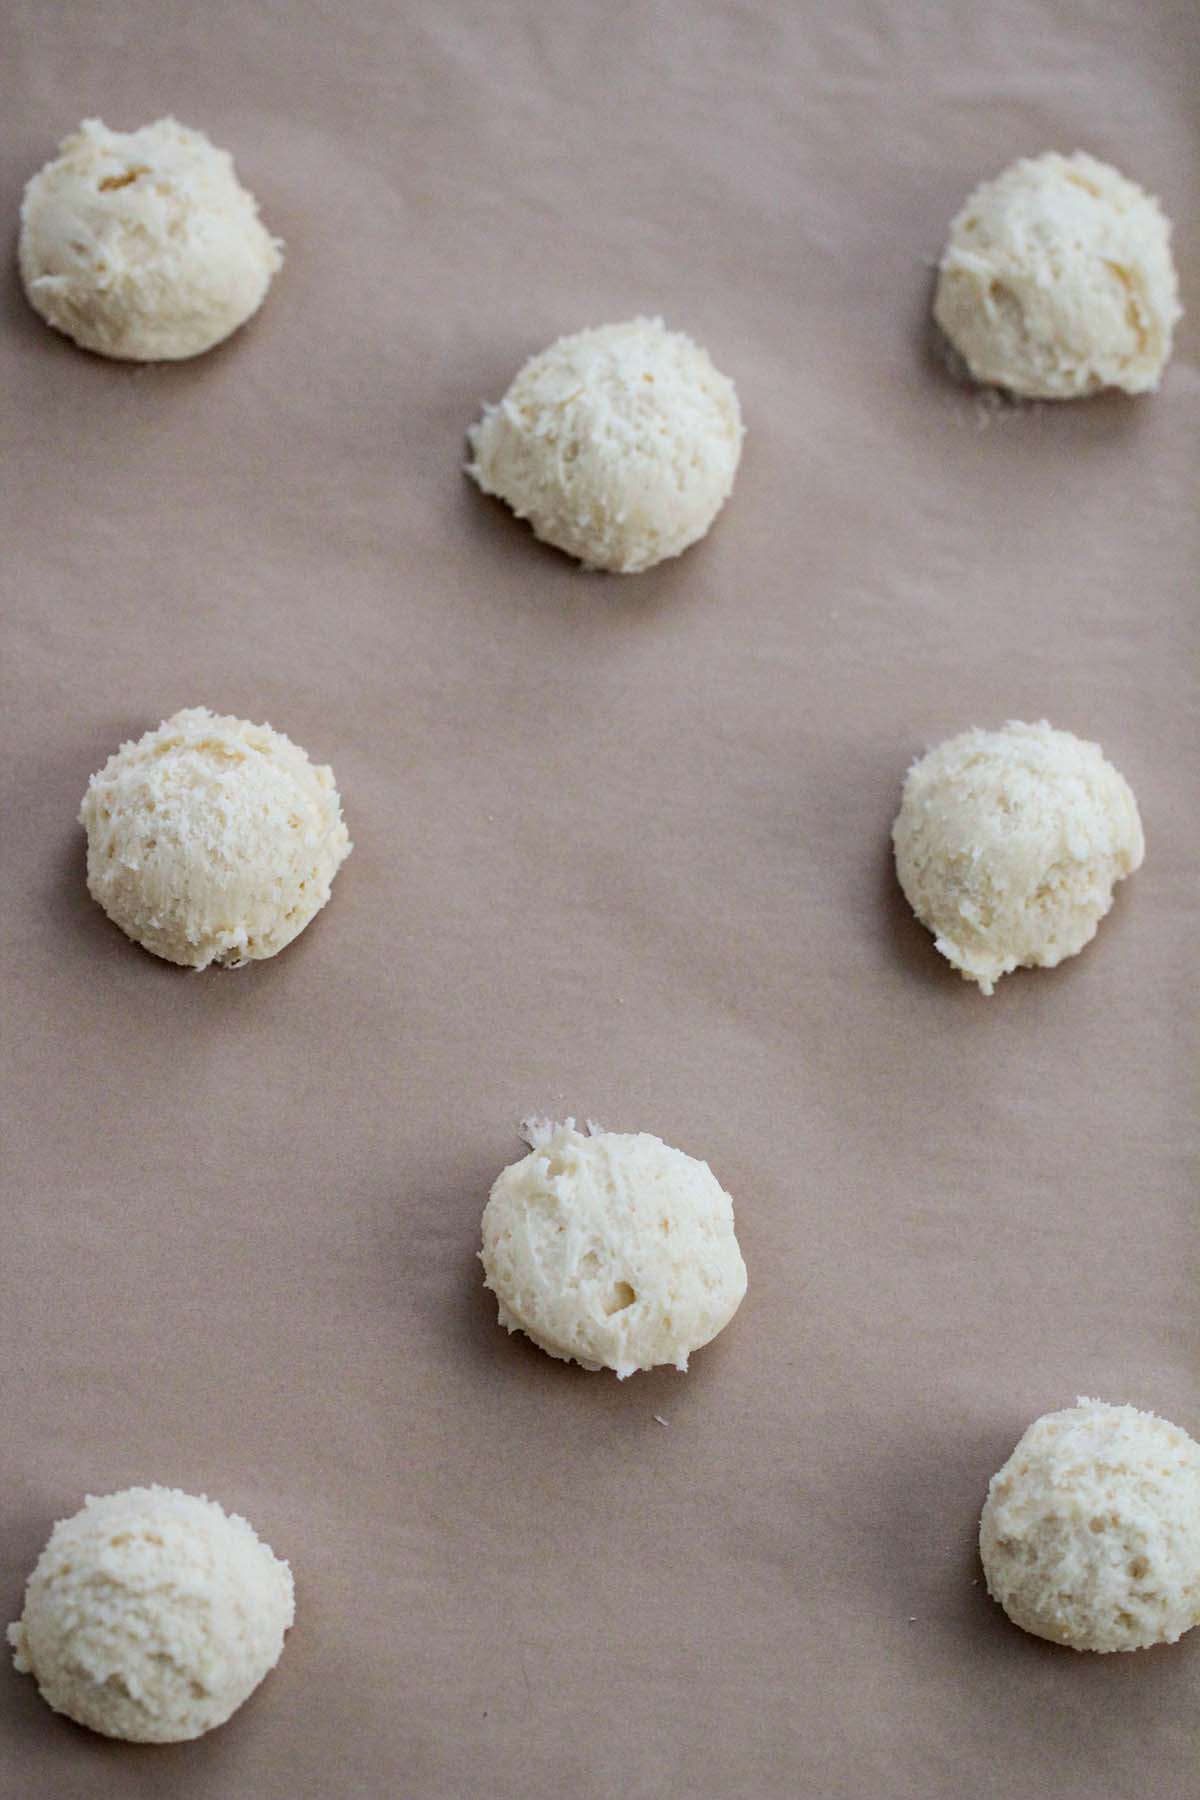 eight cookie dough balls on a baking sheet.